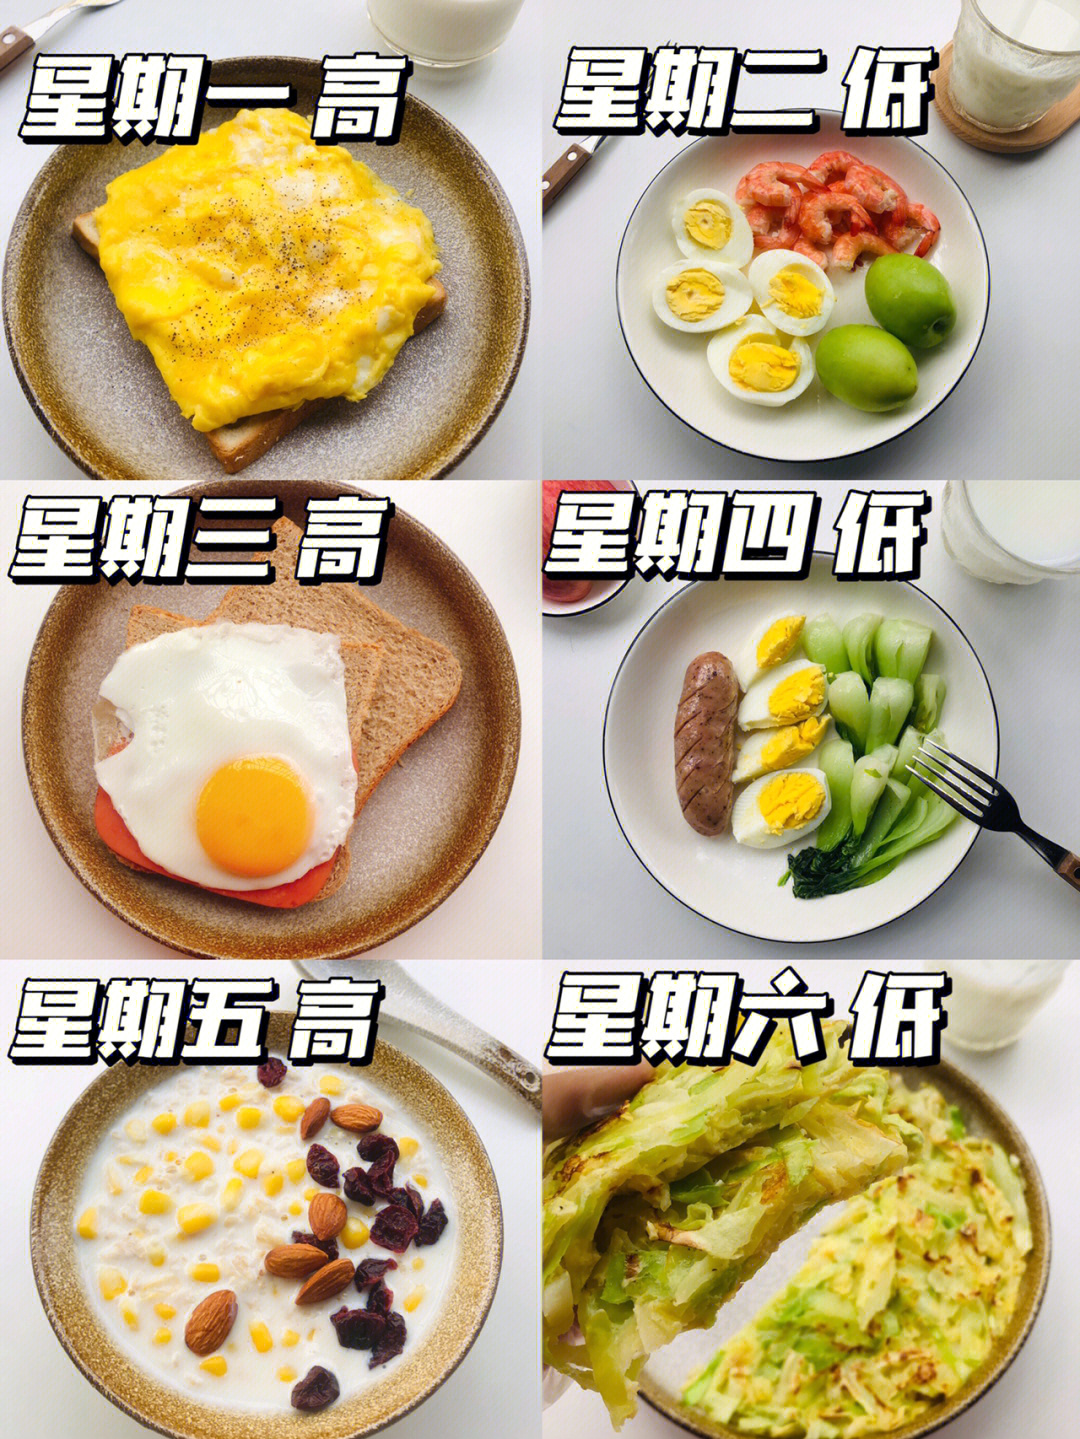 健康早餐食谱早上图片